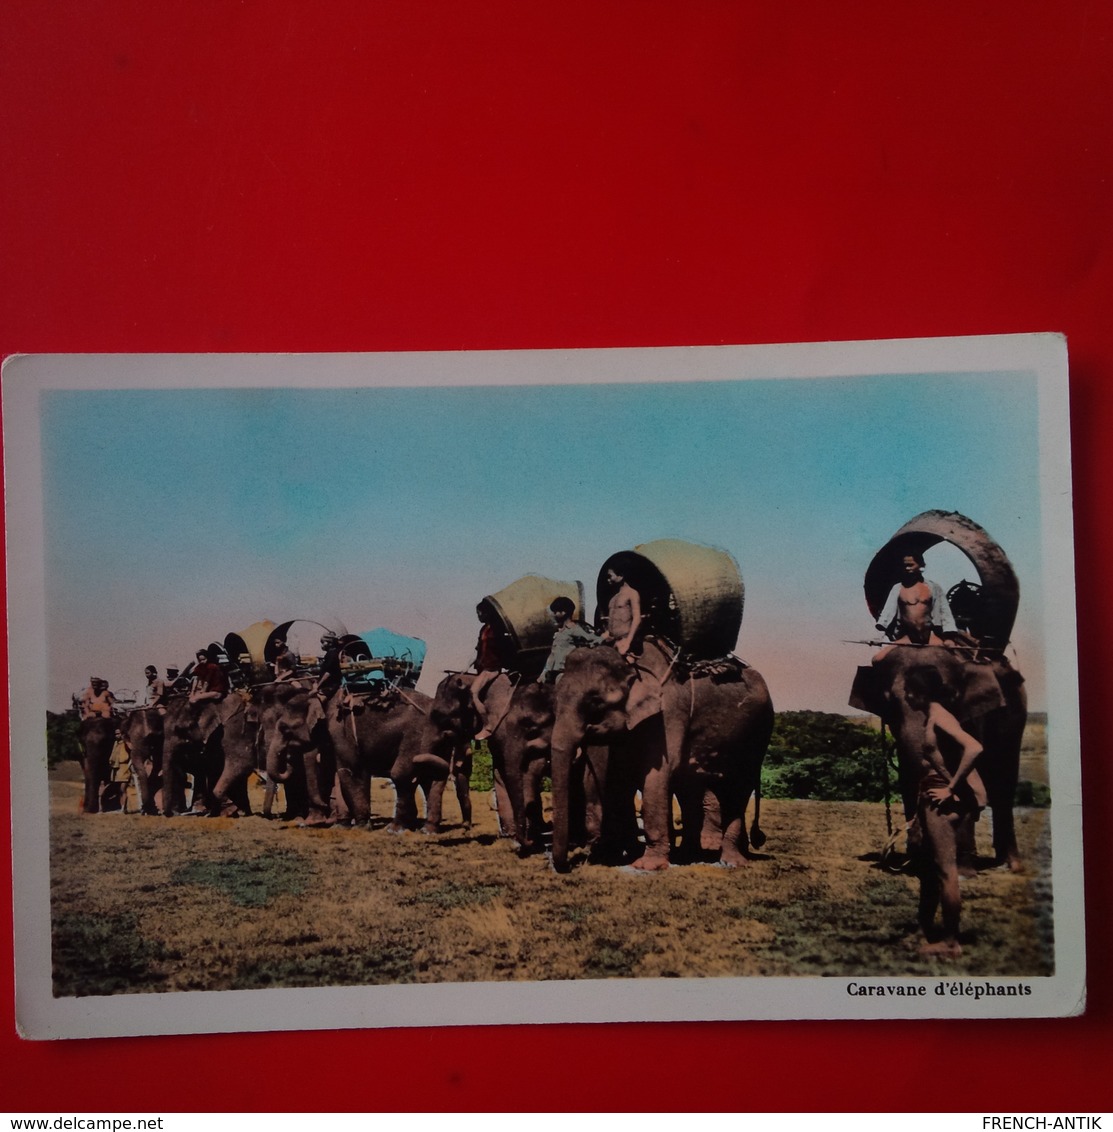 CARAVANE D ELEPHANTS - Elephants